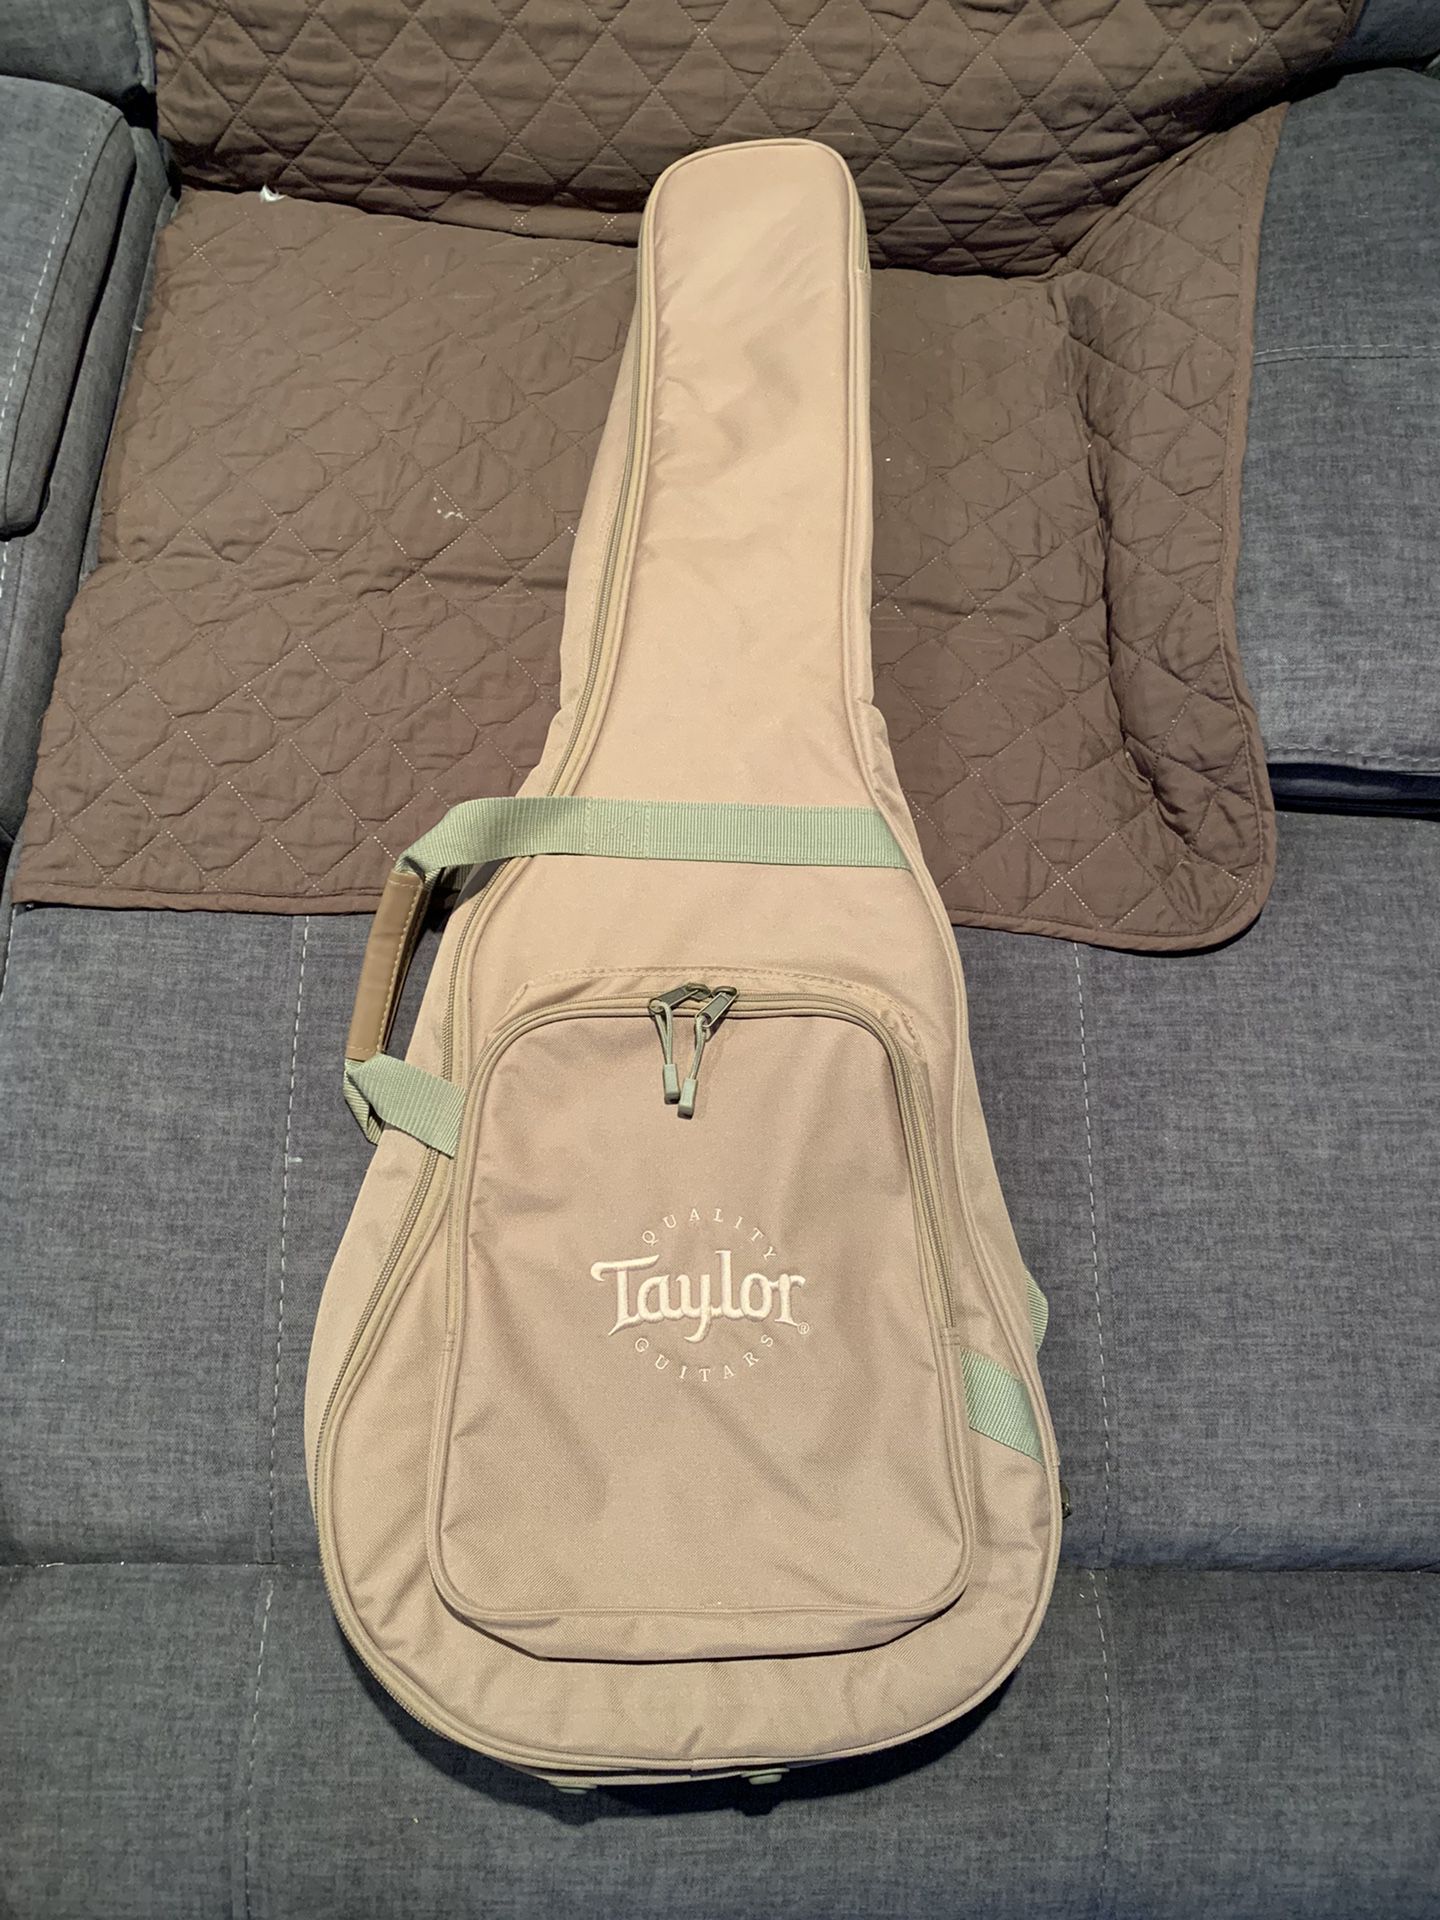 Taylor Guitars Gig Bag Brand New